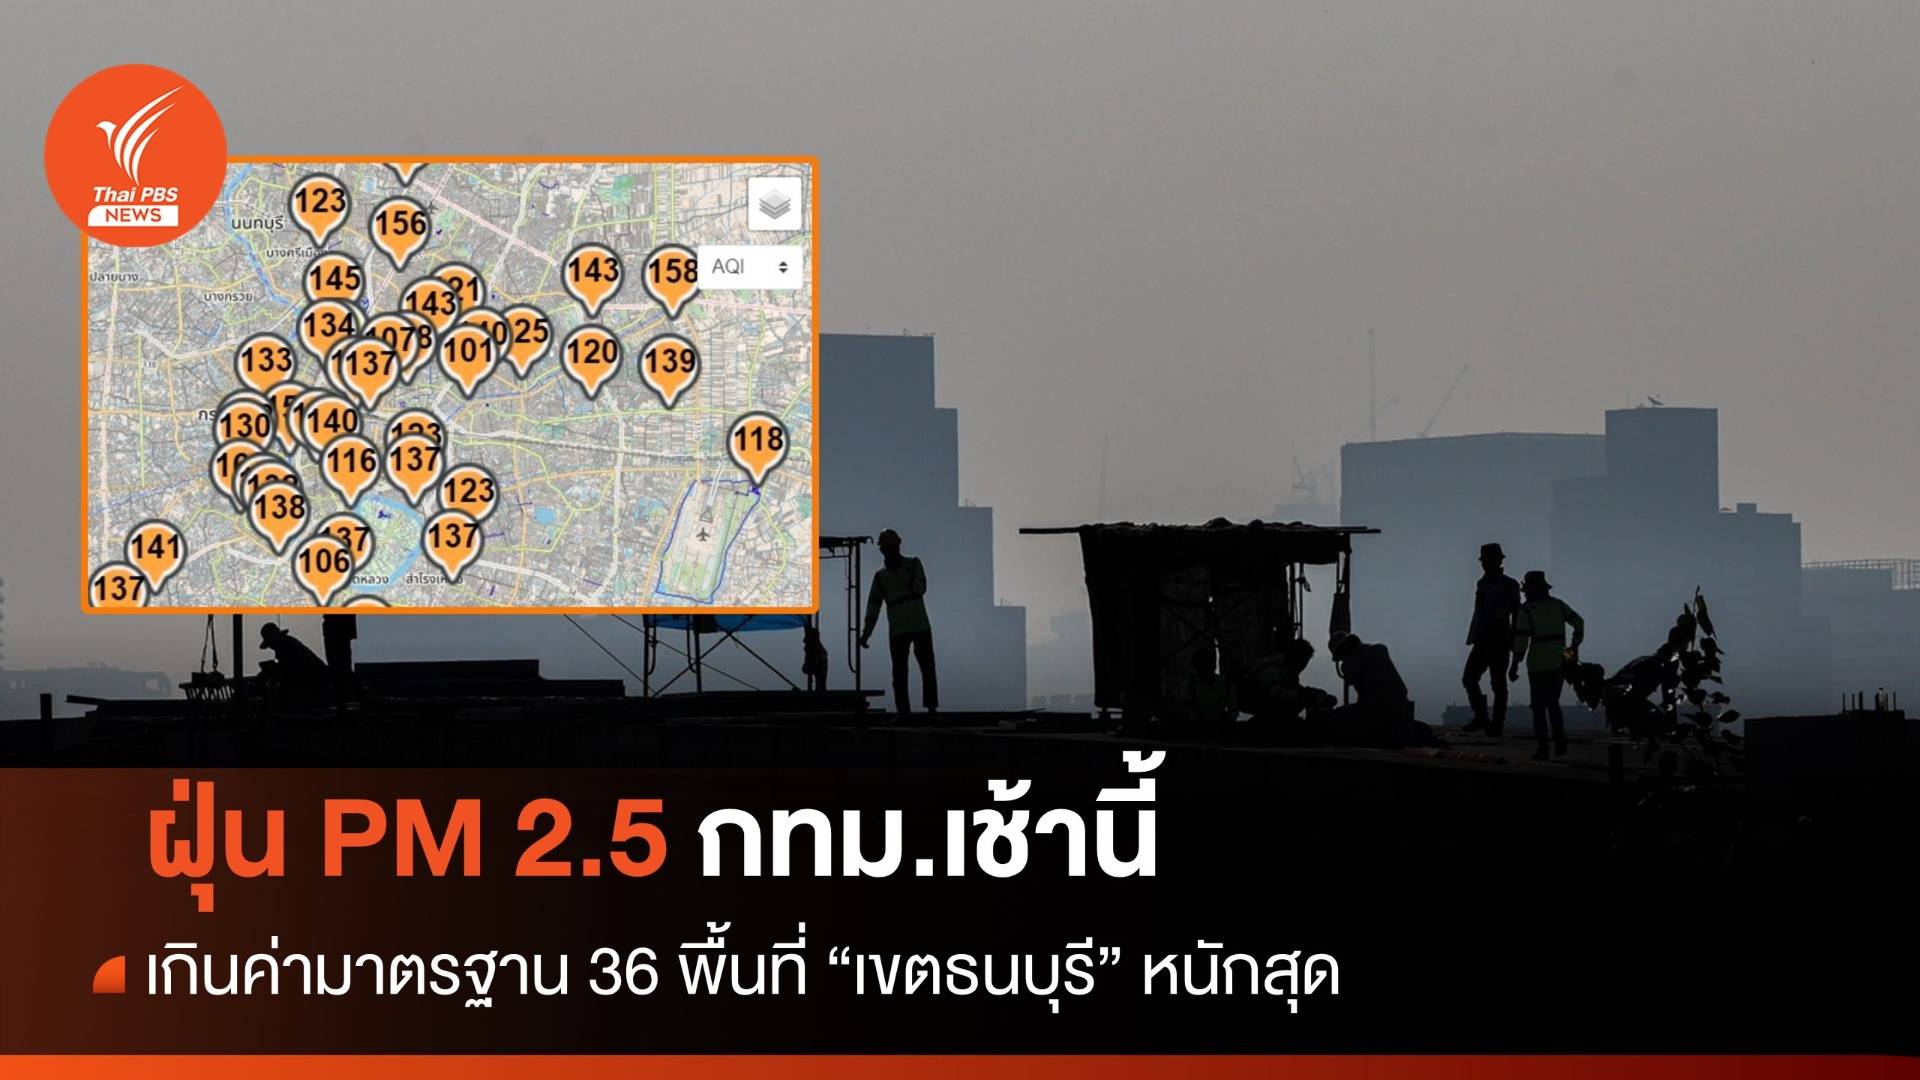 กทม.เช้านี้ ฝุ่น PM 2.5 เกินมาตรฐาน 36 พื้นที่ เขตธนบุรี หนักสุด